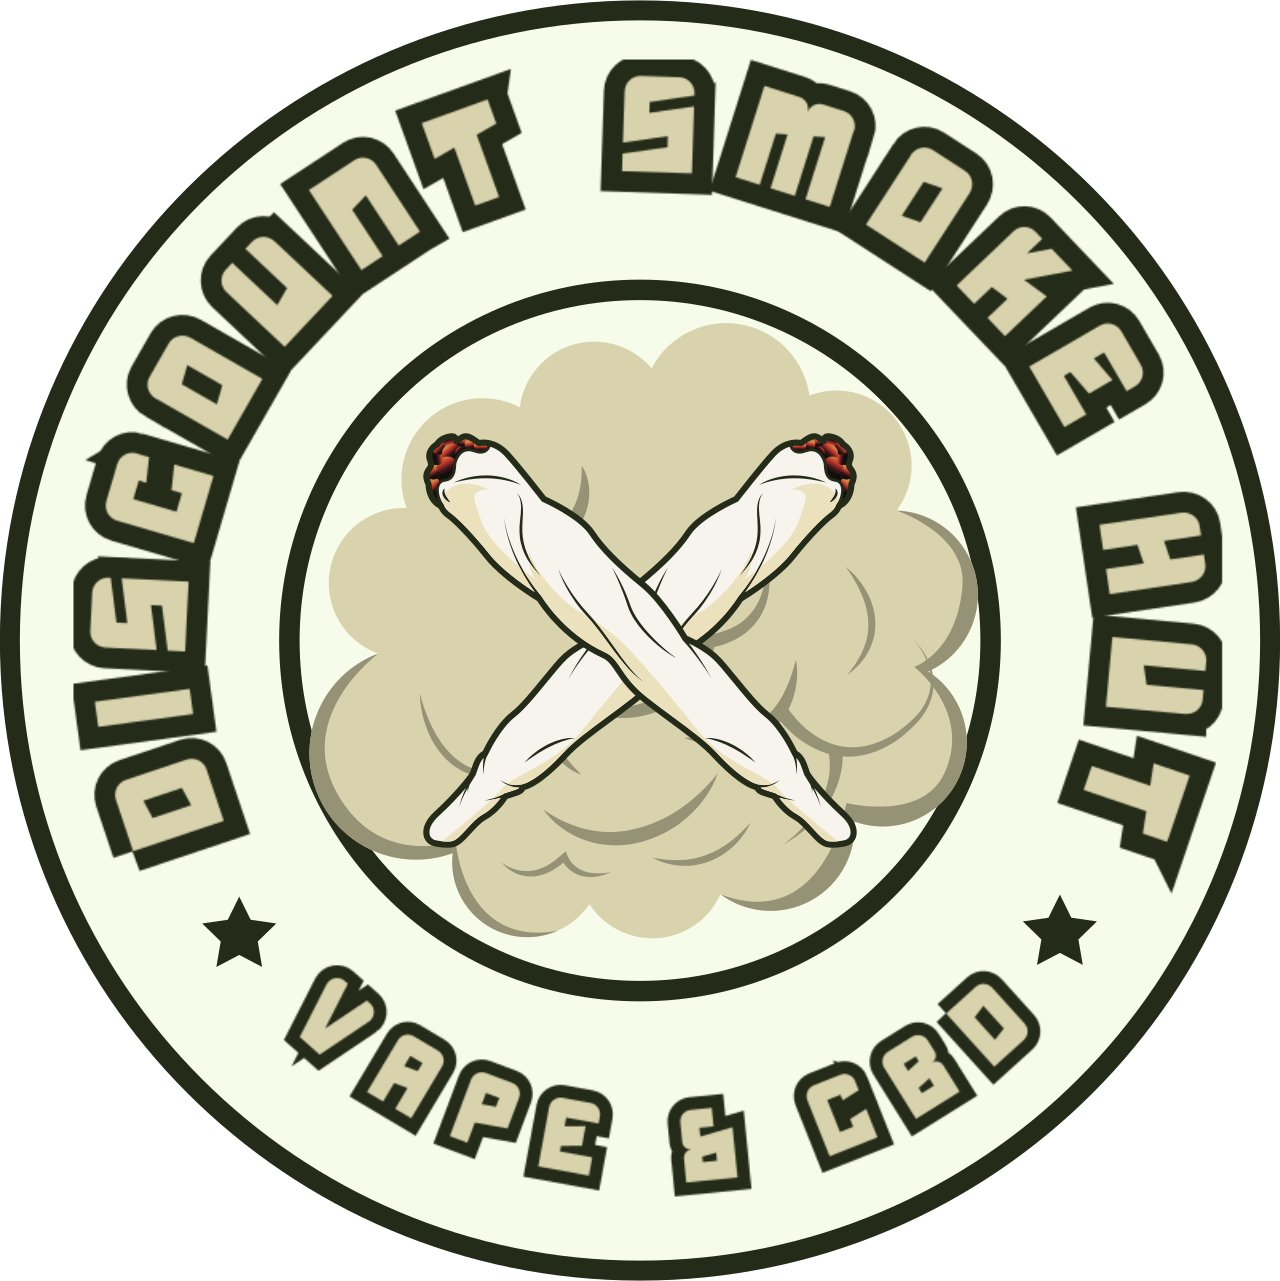 SMOKE SHOP SOUTH ELGIN IL's logo